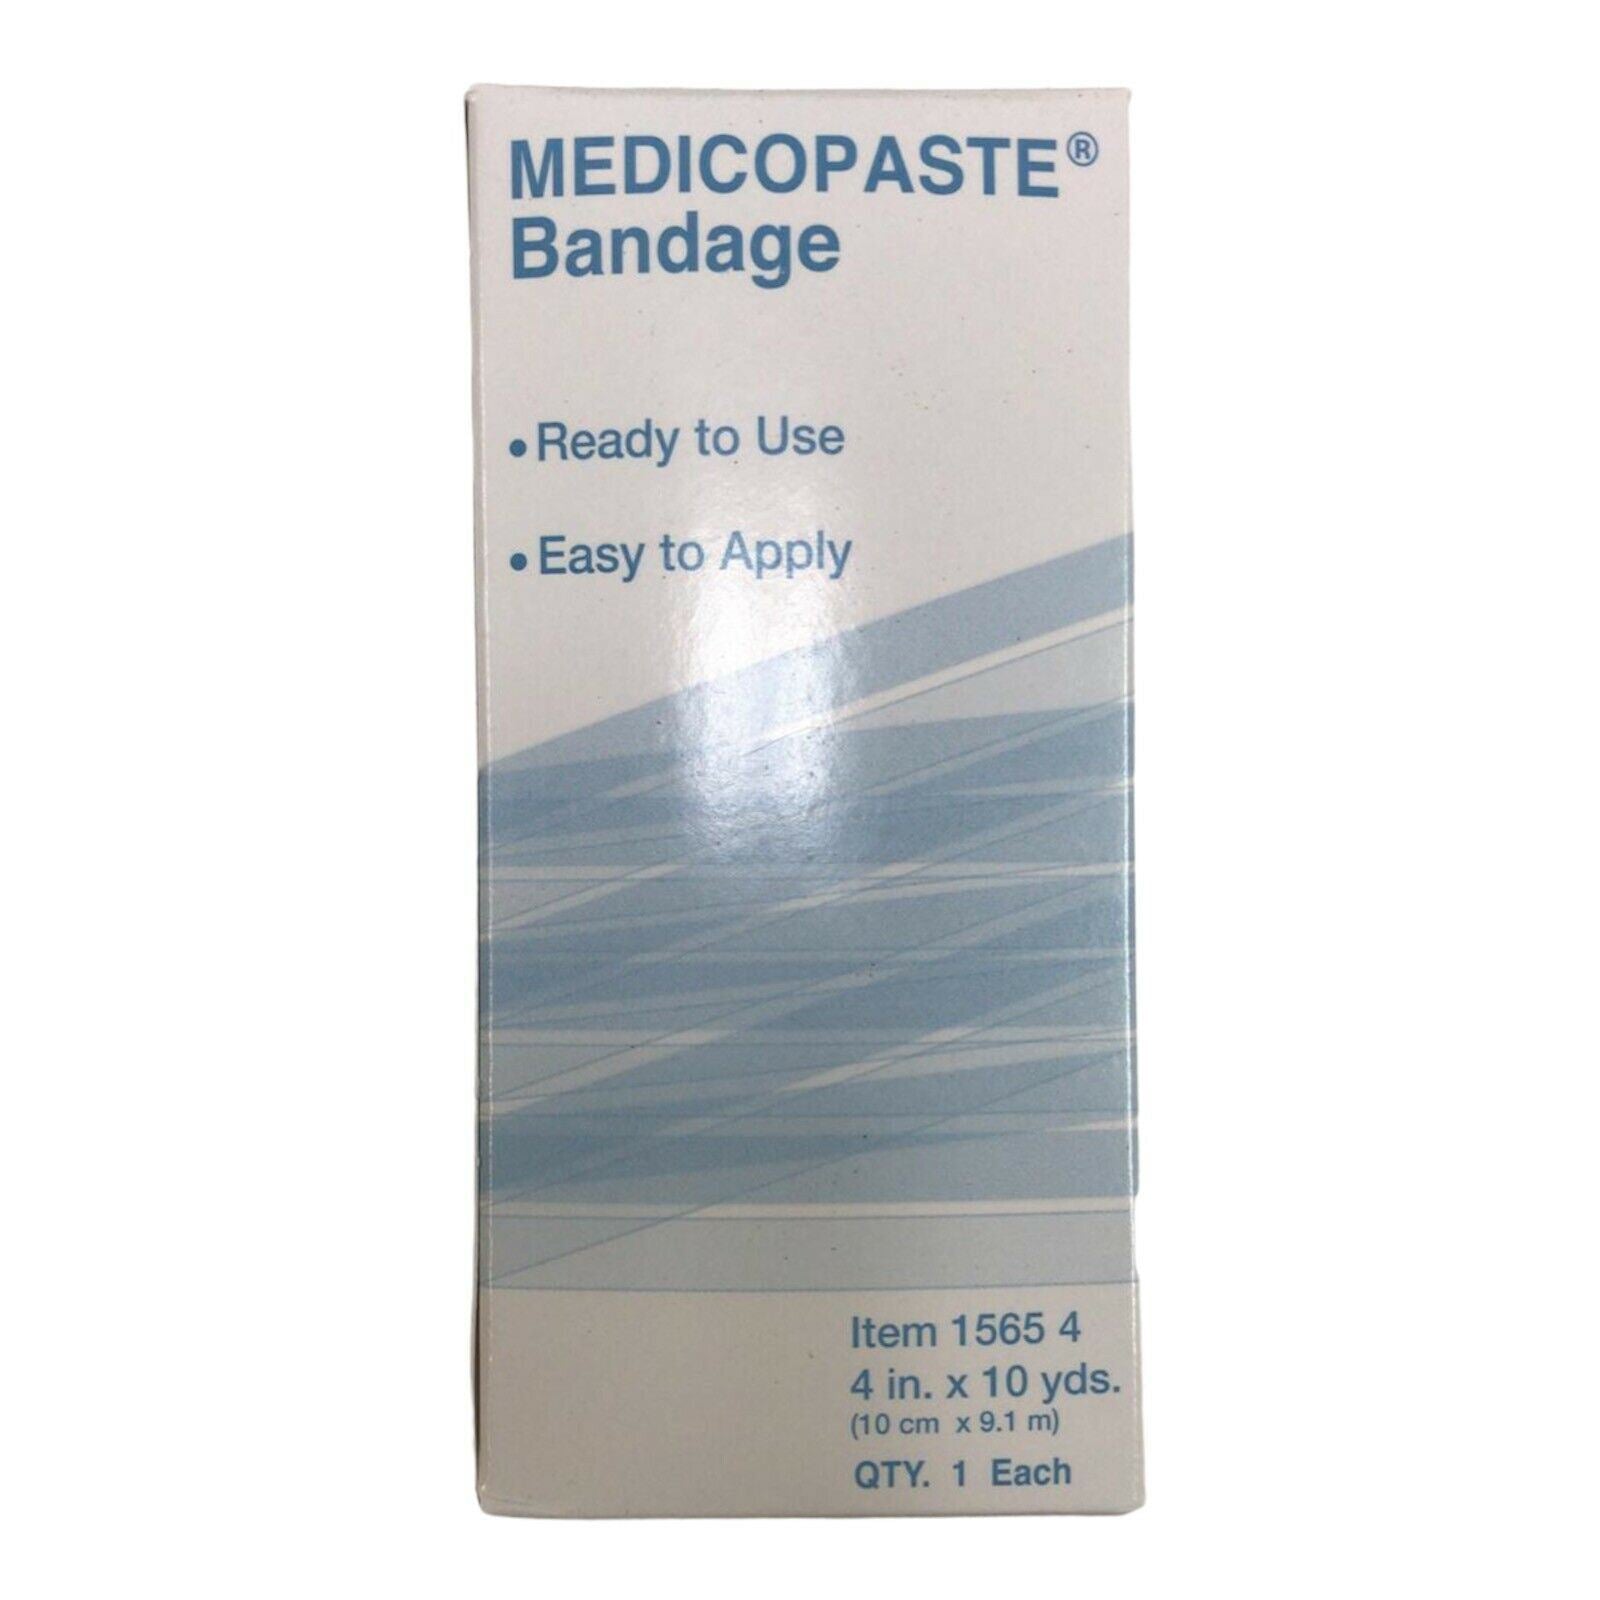 1 - Medicopaste Bandage 4in x 10yds Item 1565 4 | CEM-22 DIAGNOSTIC ULTRASOUND MACHINES FOR SALE